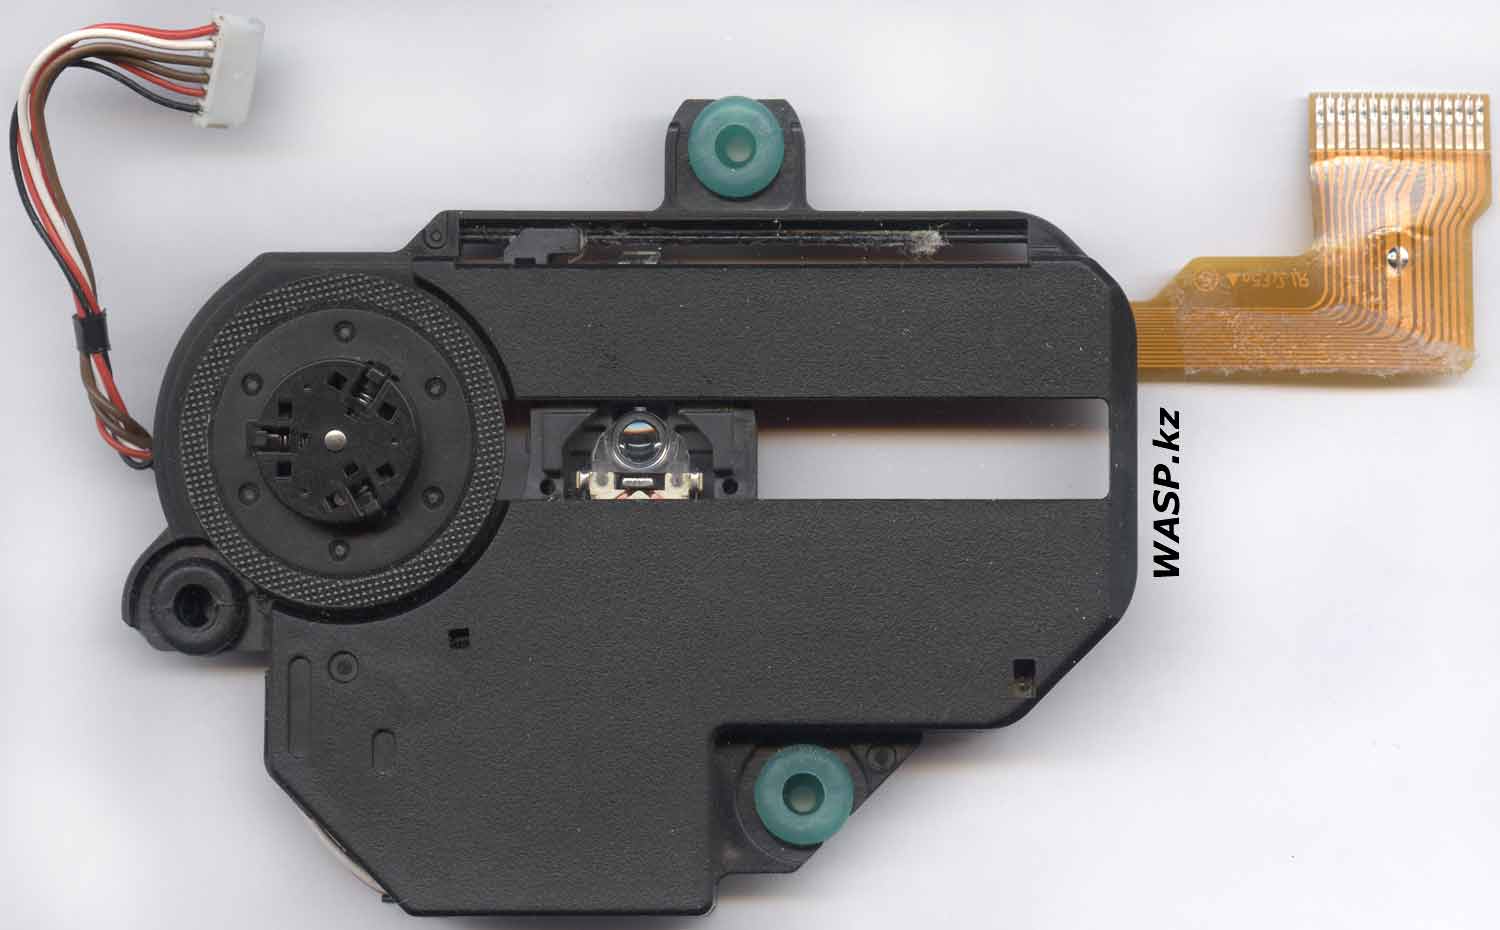 Artech VCD35-R оптический привод в плеере